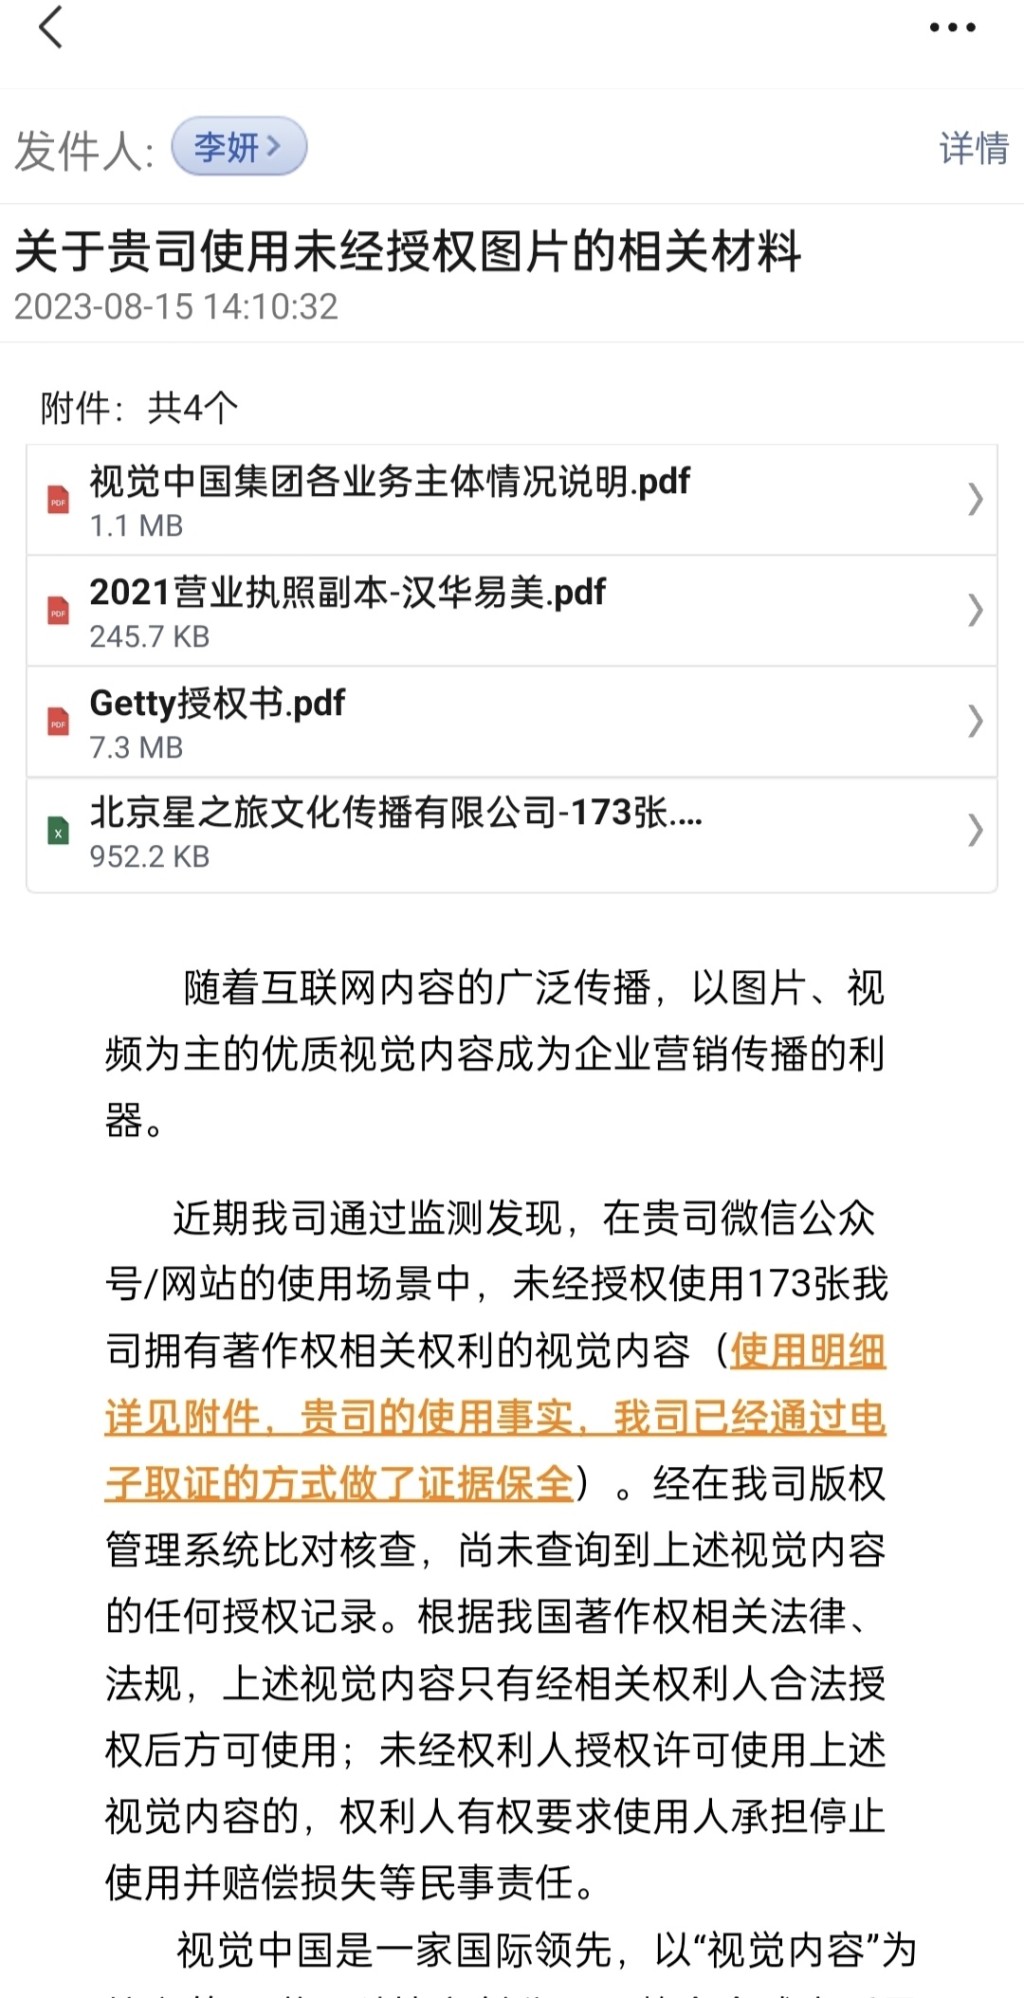 视觉中国发给戴建峰的侵权通知。 微博